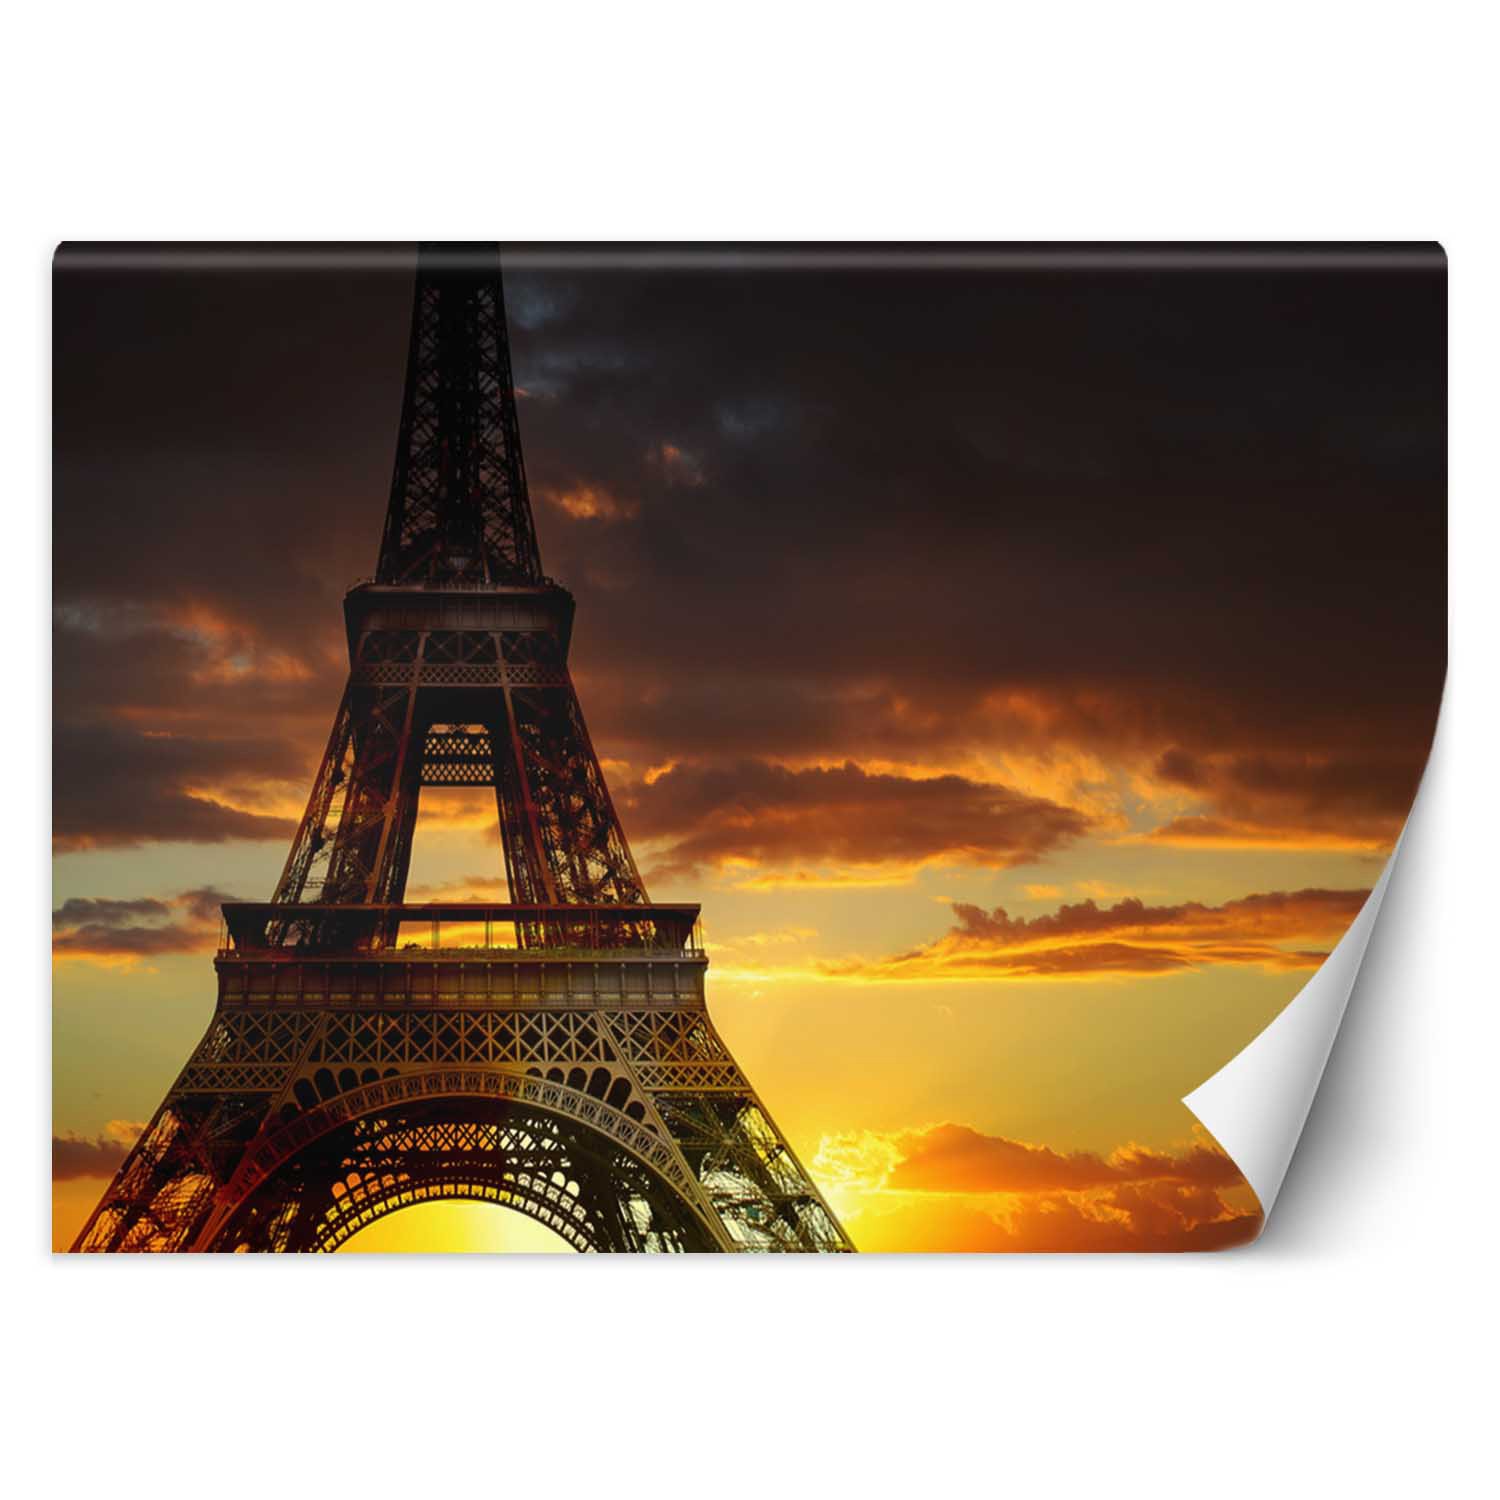 Trend24 – Behang – Eiffeltoren Bij Zonsondergang – Vliesbehang – Fotobehang – Behang Woonkamer – 350x245x2 cm – Incl. behanglijm